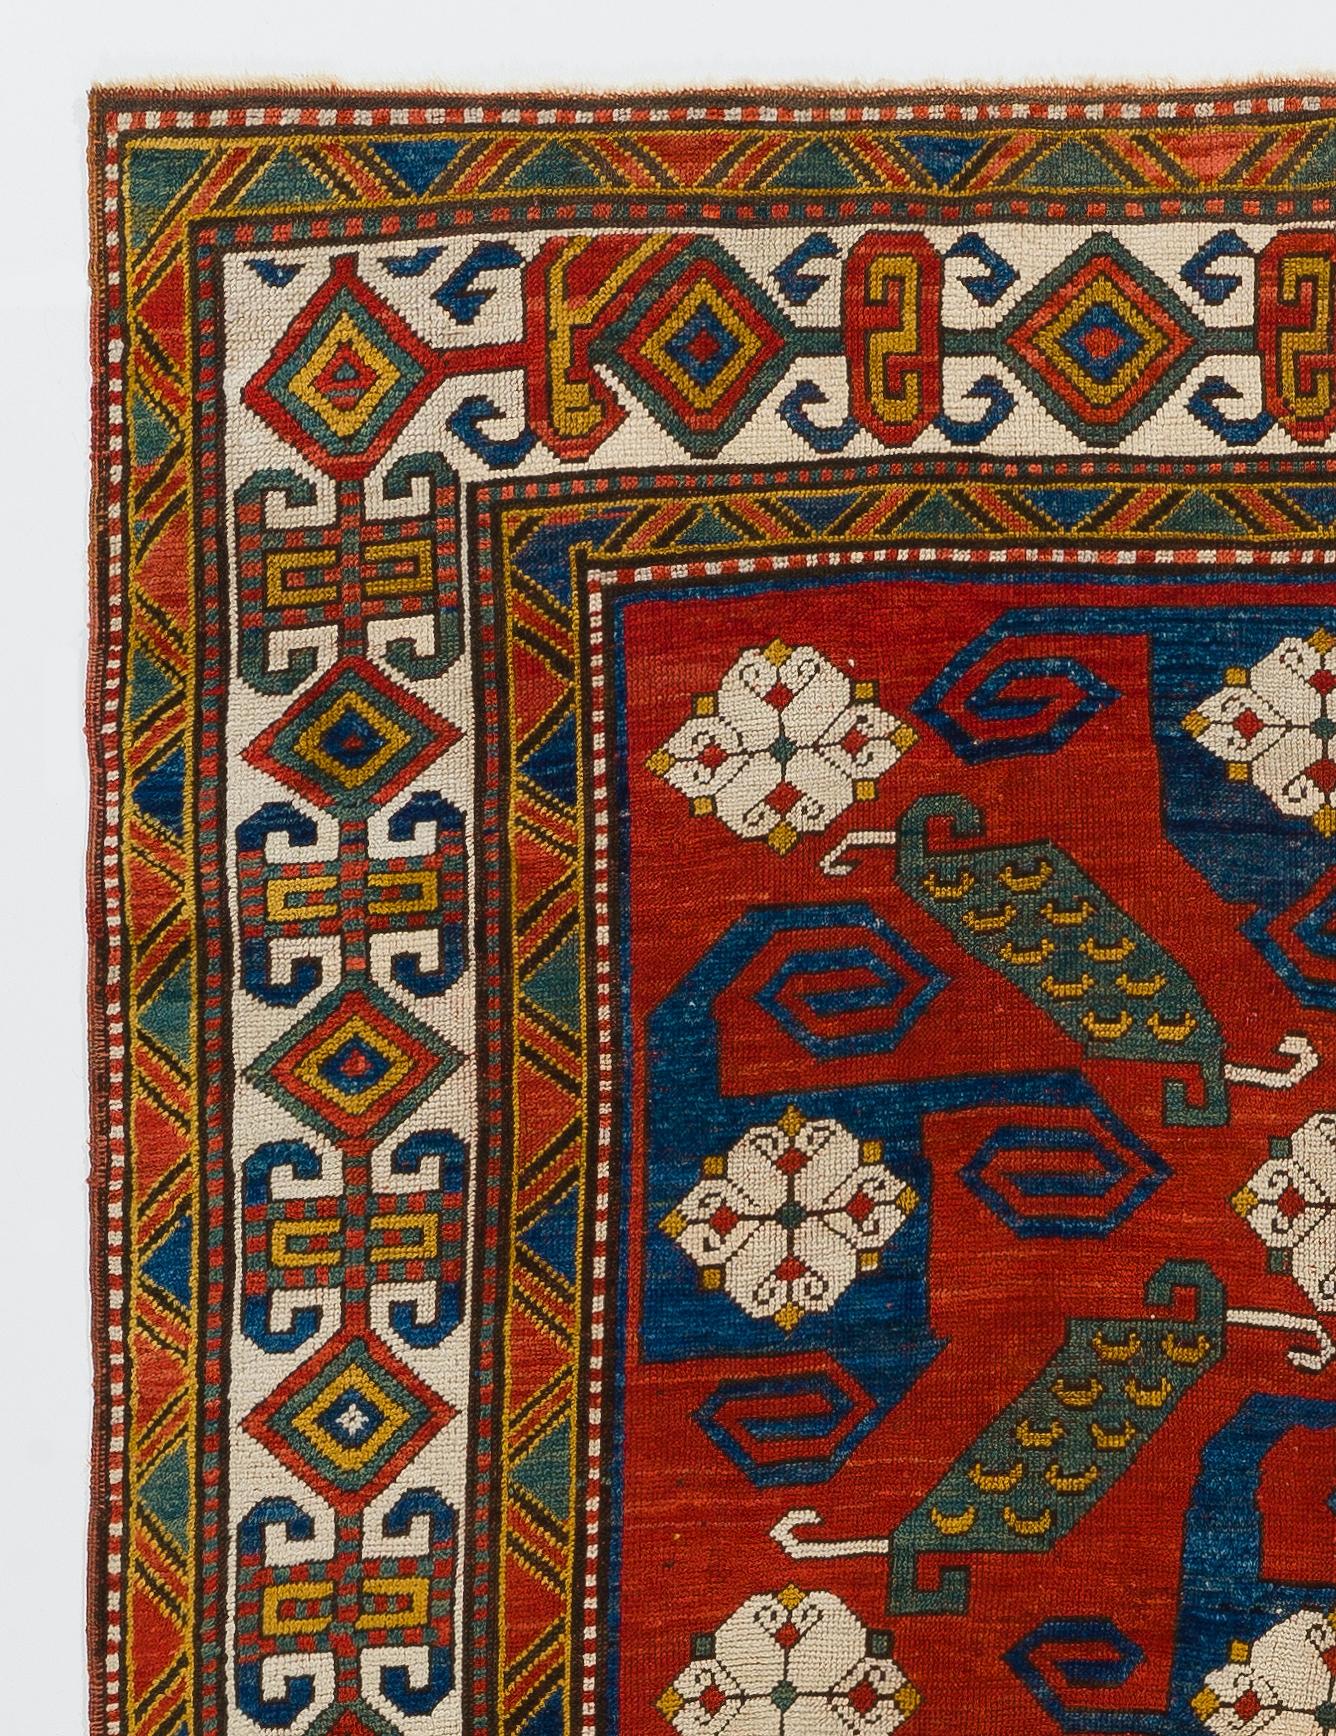 Seltener antiker kaukasischer Pinwheel-Kazak-Teppich in gut erhaltenem Zustand, original wie gefunden. Nur Wolle und natürliche Farbstoffe. 
Provenienz: Eine Privatsammlung im Vereinigten Königreich.
CIRCA 1870